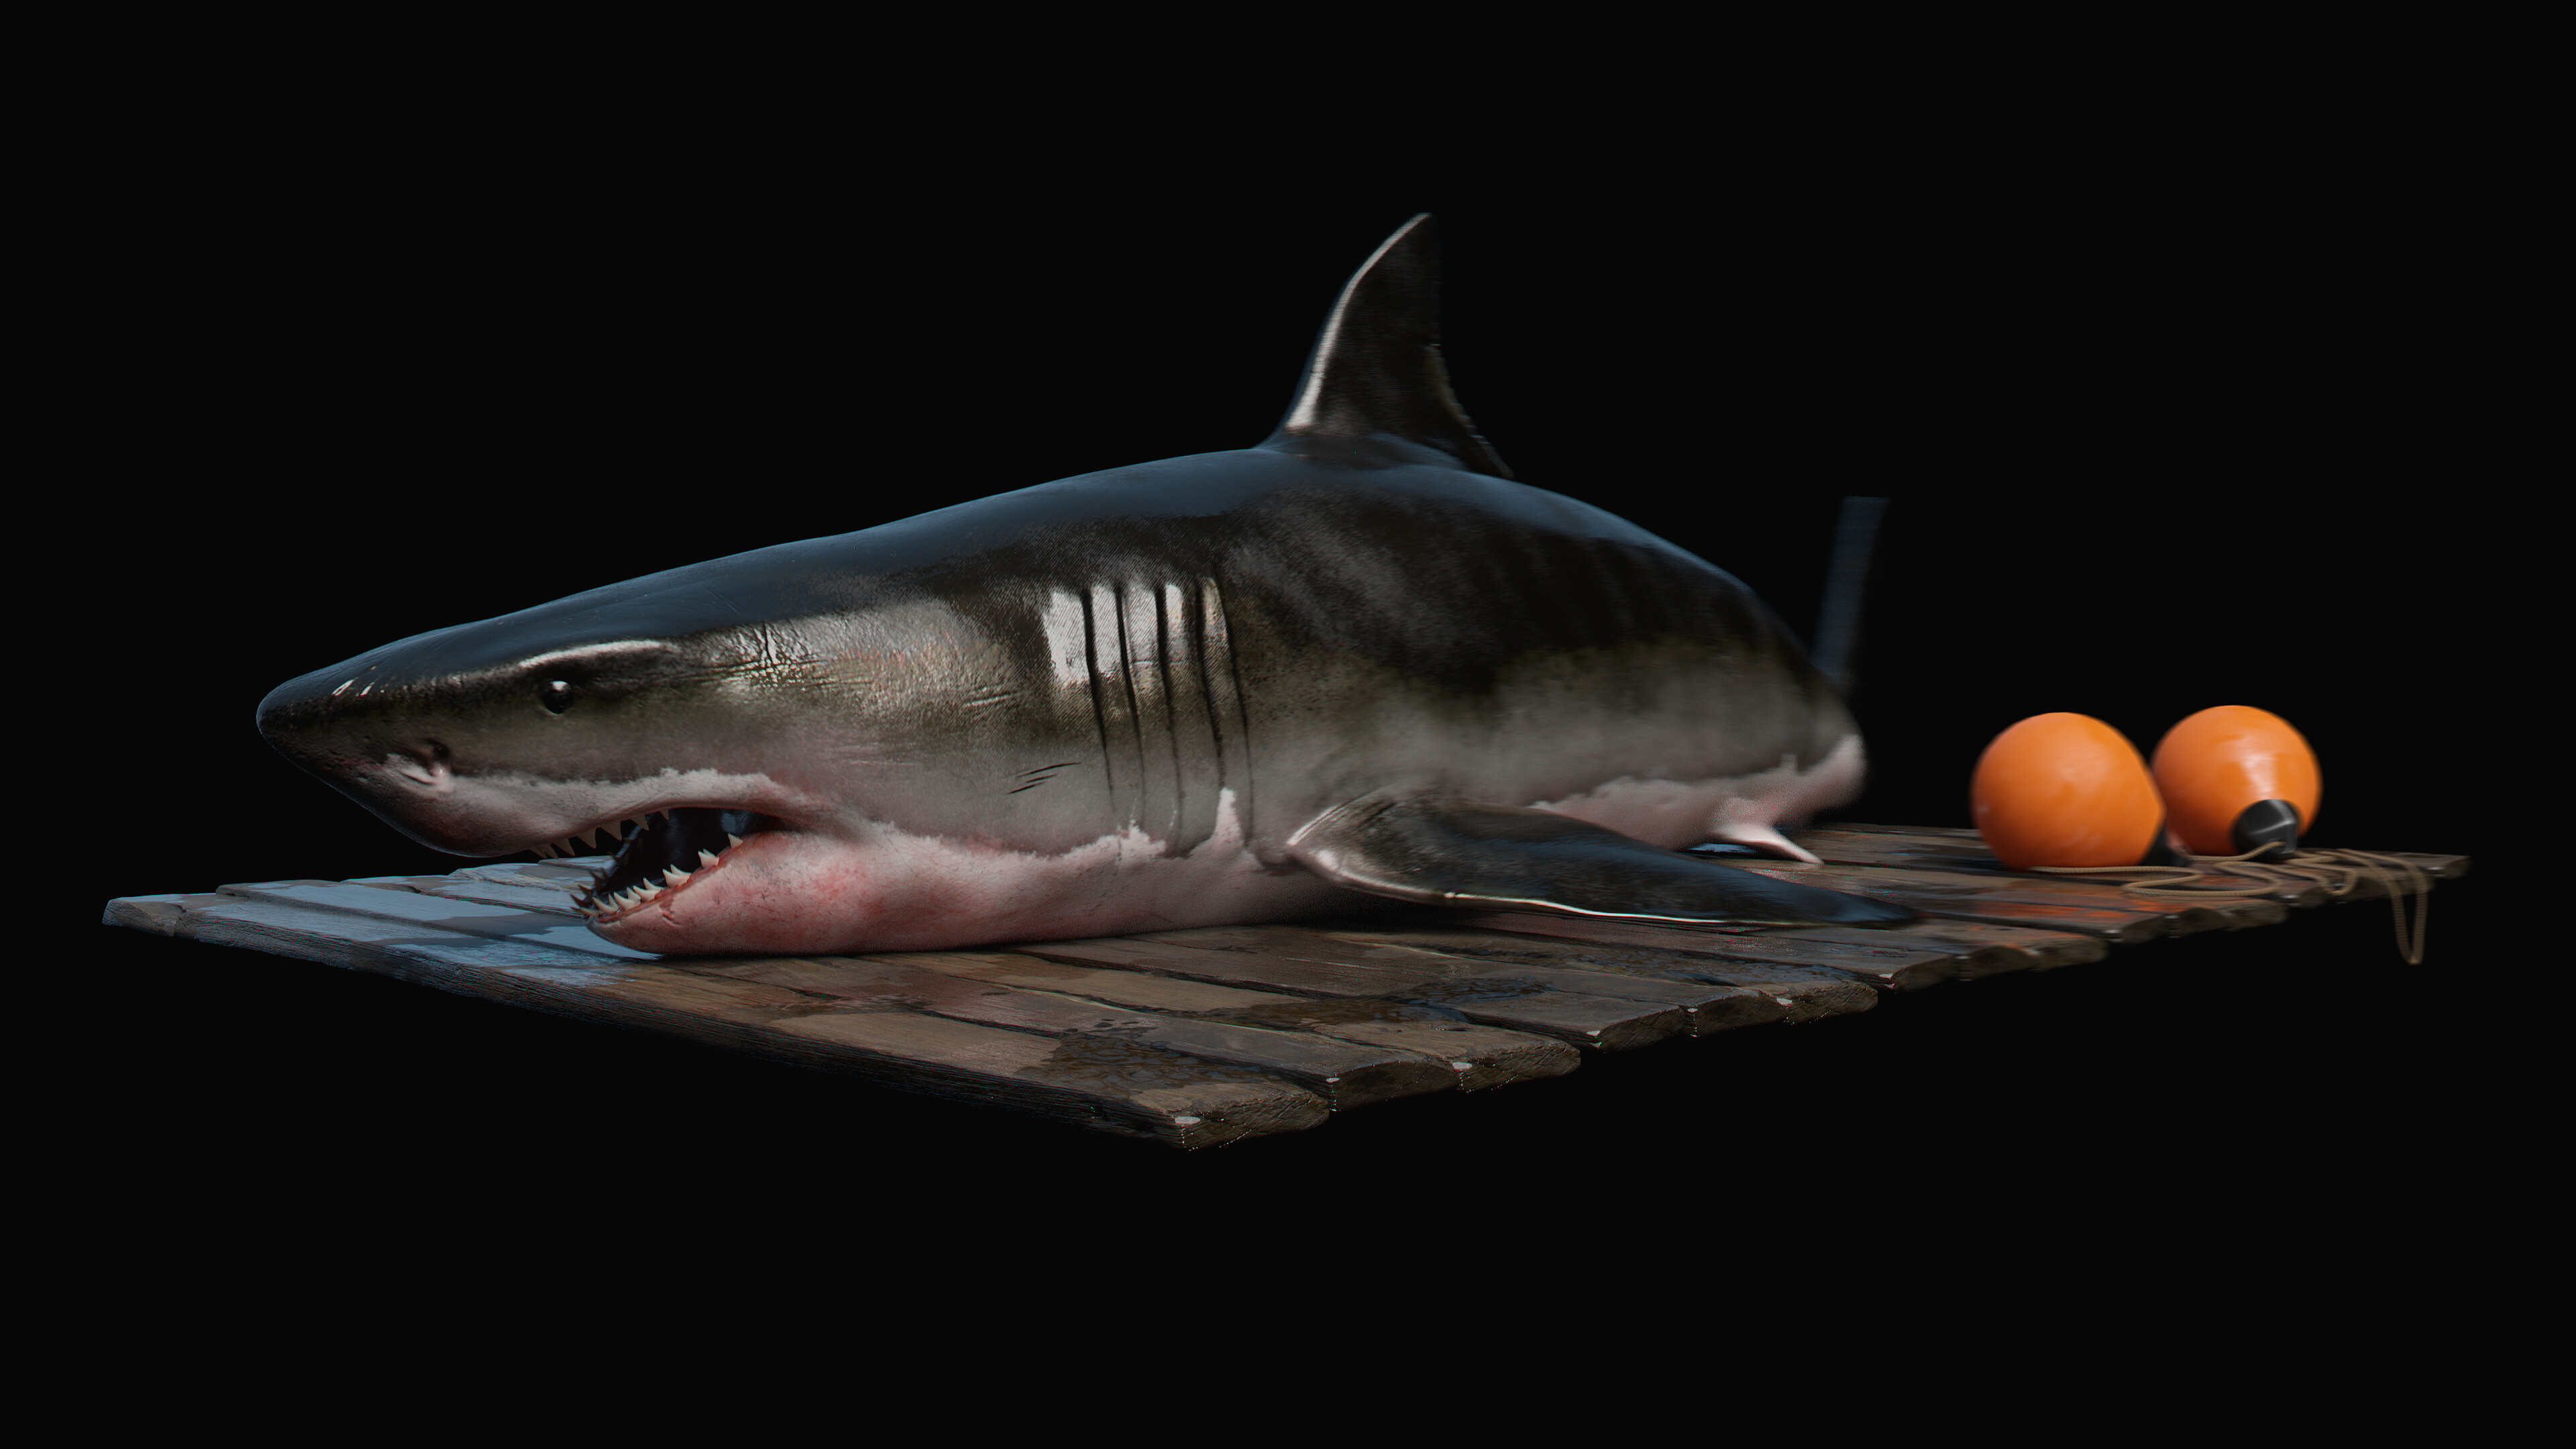 Shark - Works in Progress - Blender Artists Community